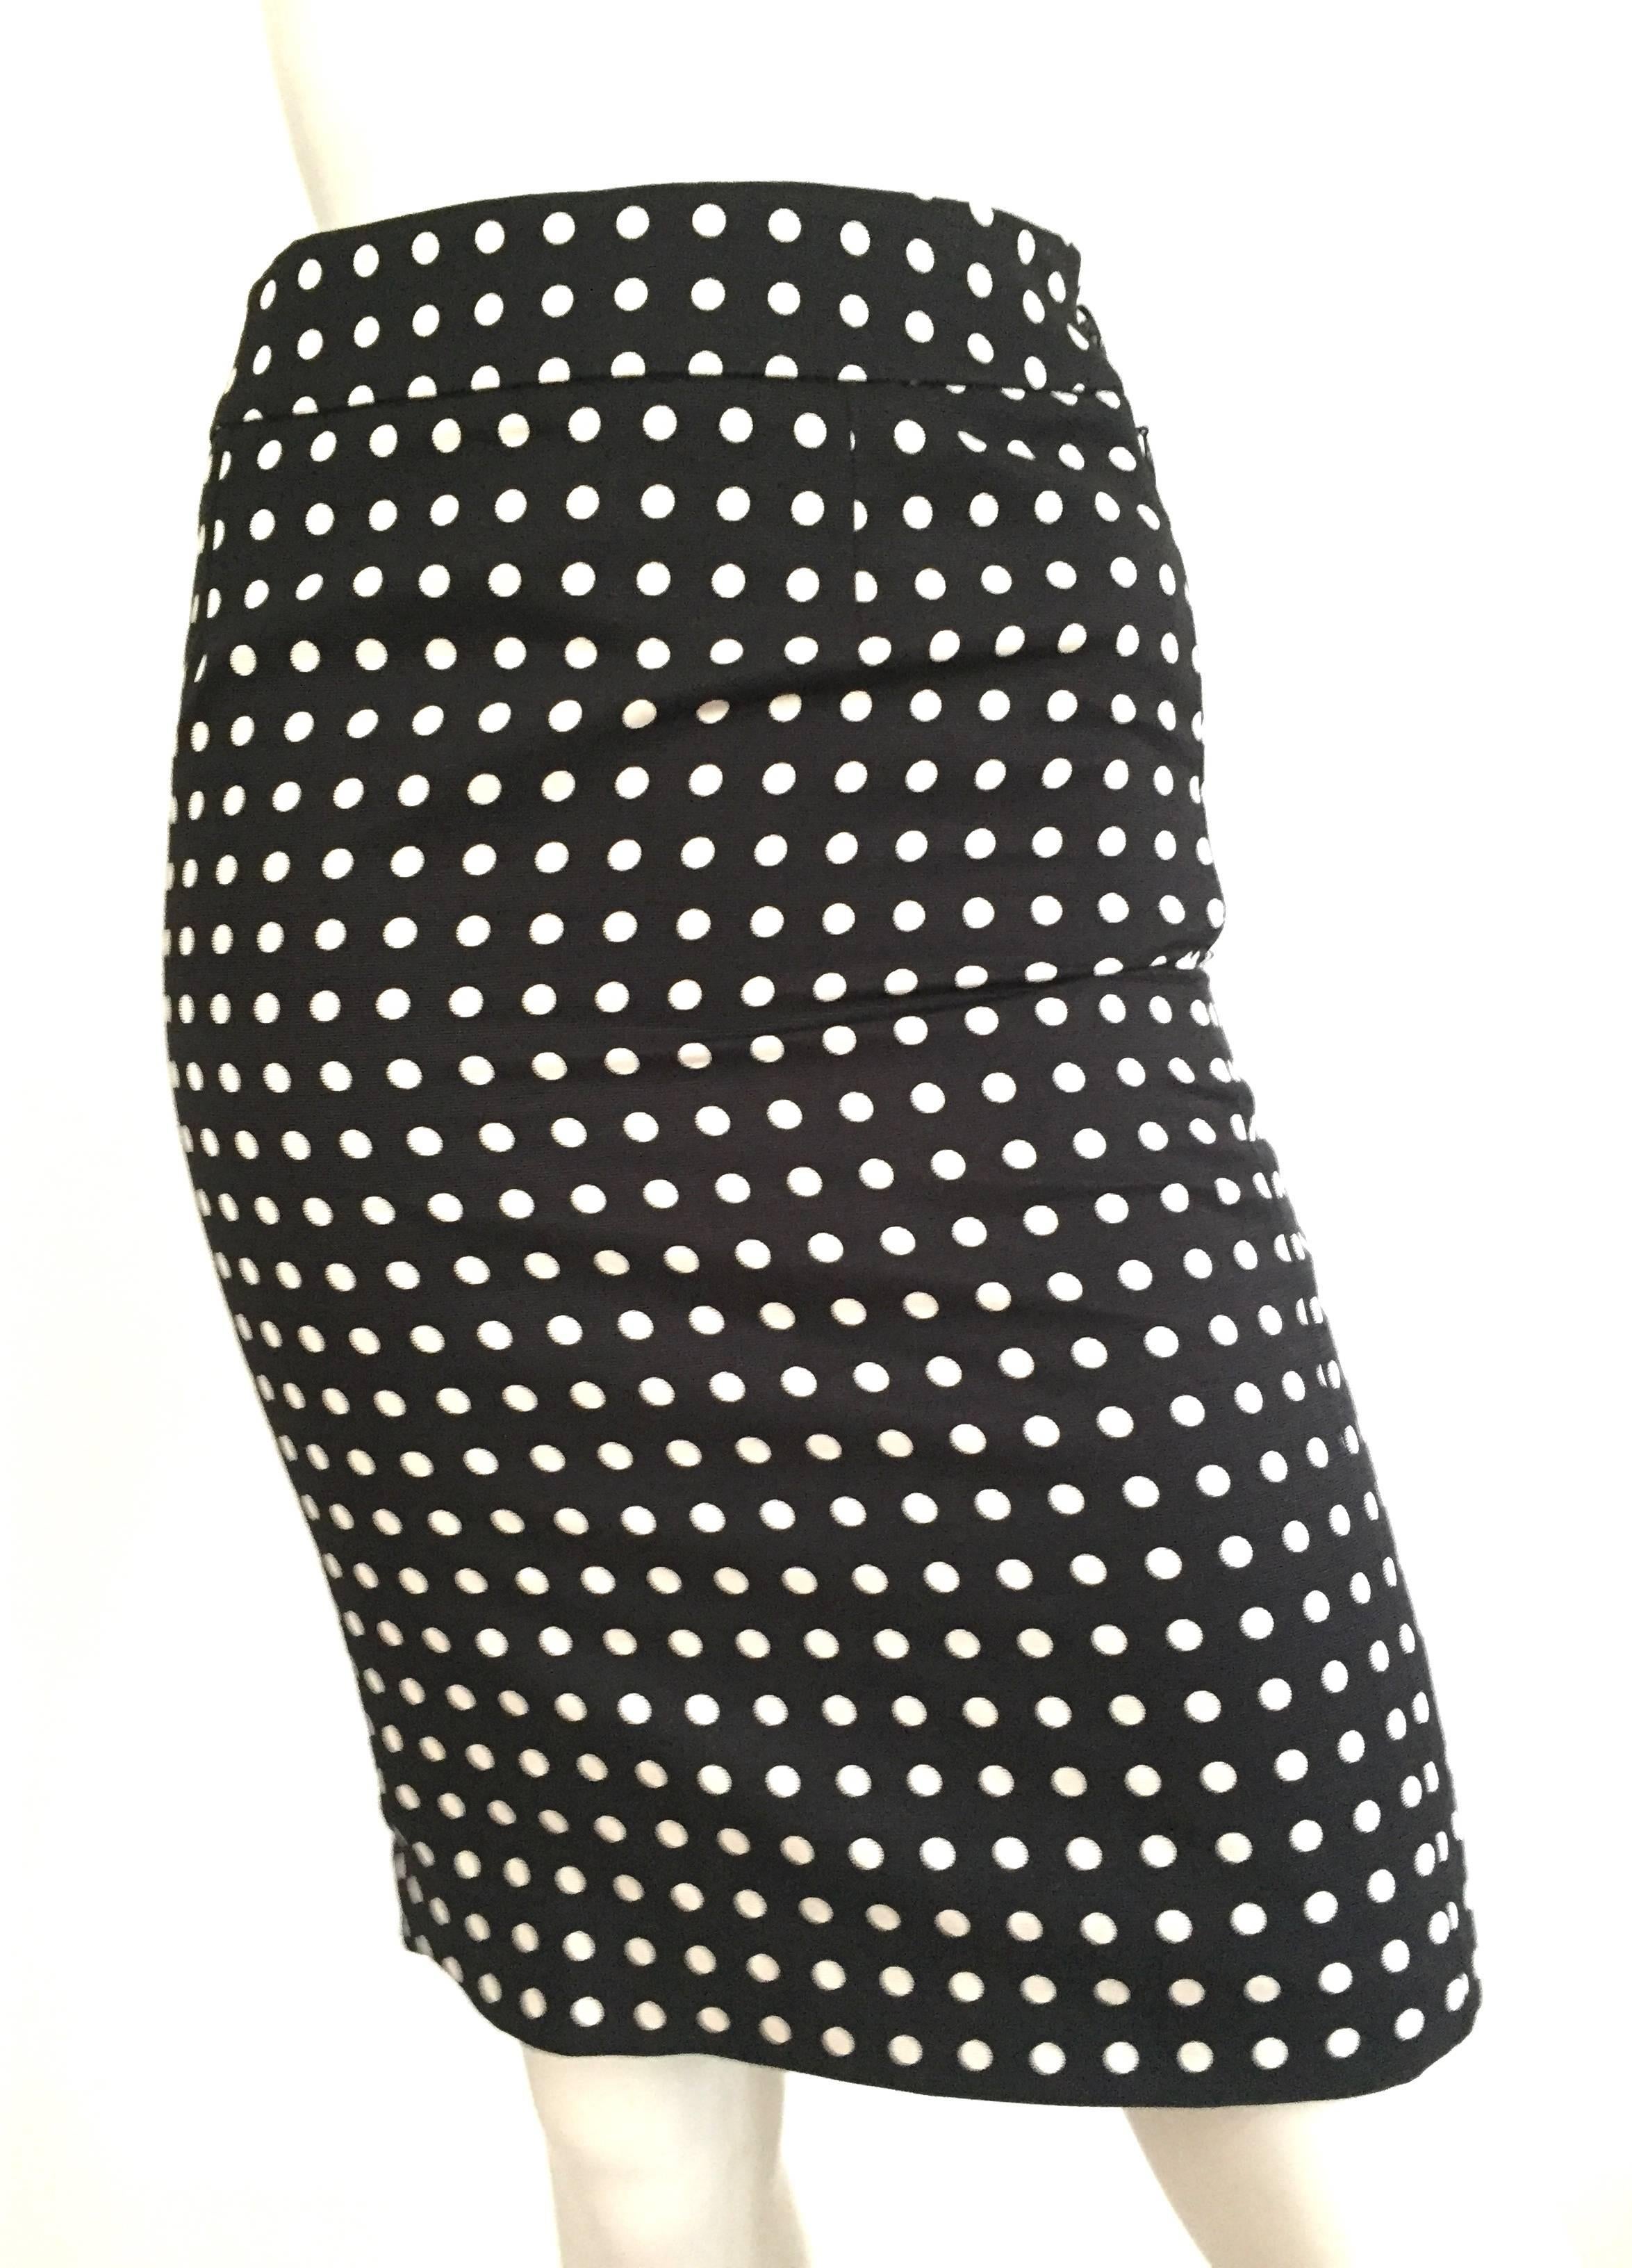 Yves Saint Laurent Polka Dot Skirt Size 4. 3